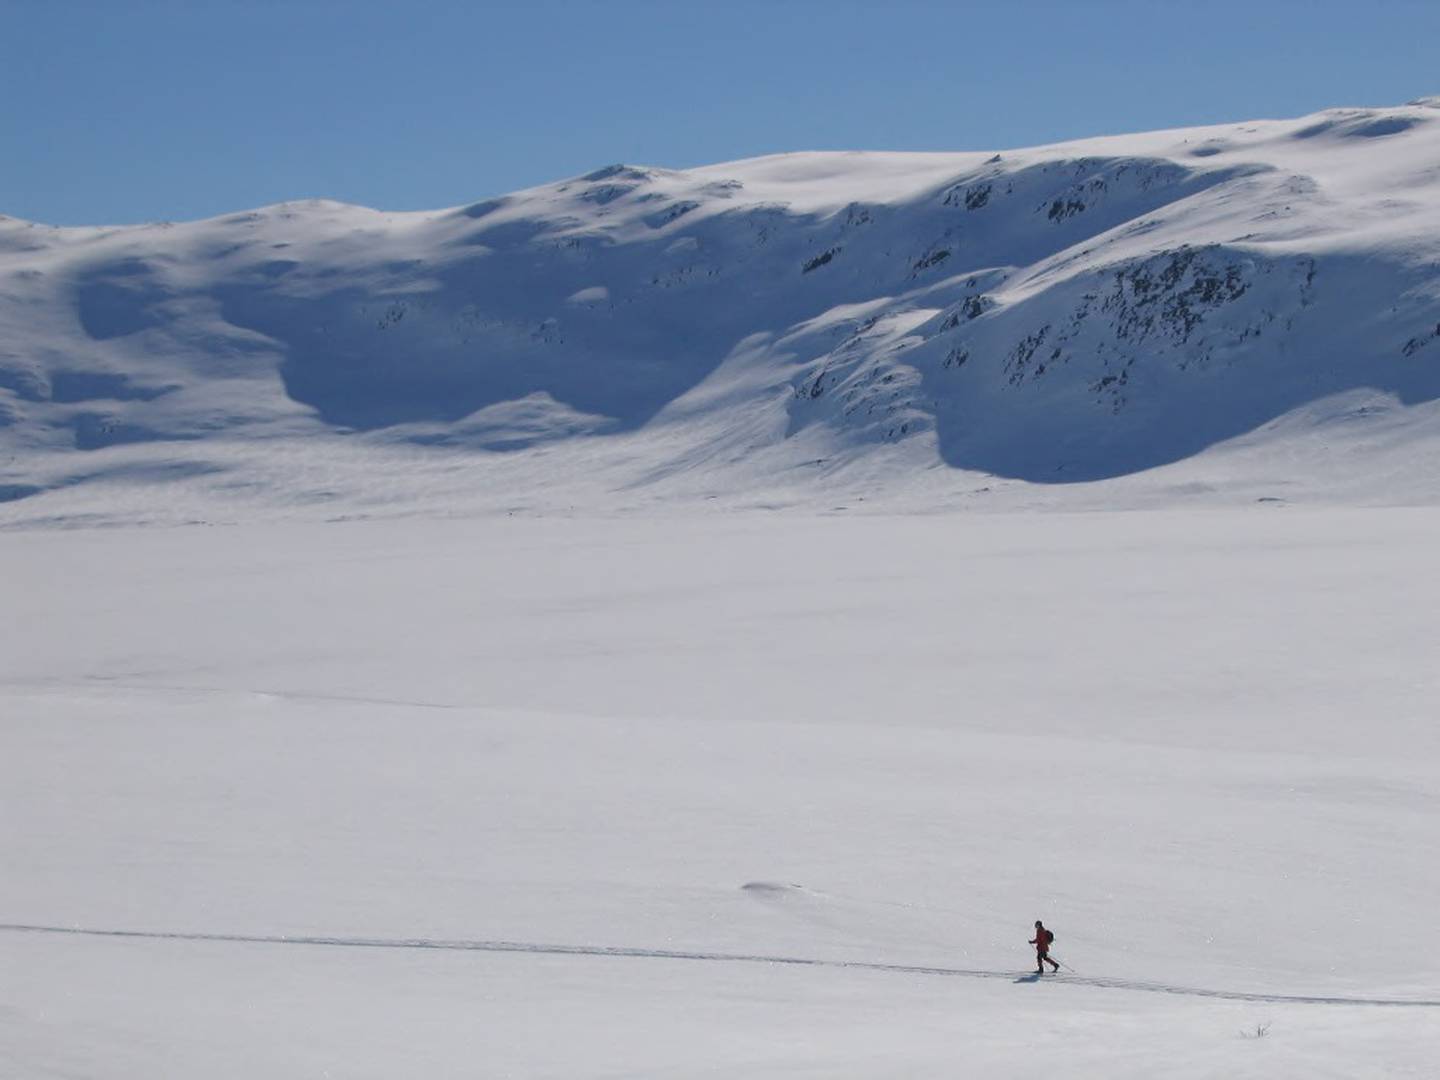 En ny studie viser at en rekke skisteder vil slite med å tilby skiføre i påsken fram mot 2050. Men på høyfjellet vil det fortsatt komme rikelig med snø. FOTO: GUNNAR LIER/NTB SCANPIX